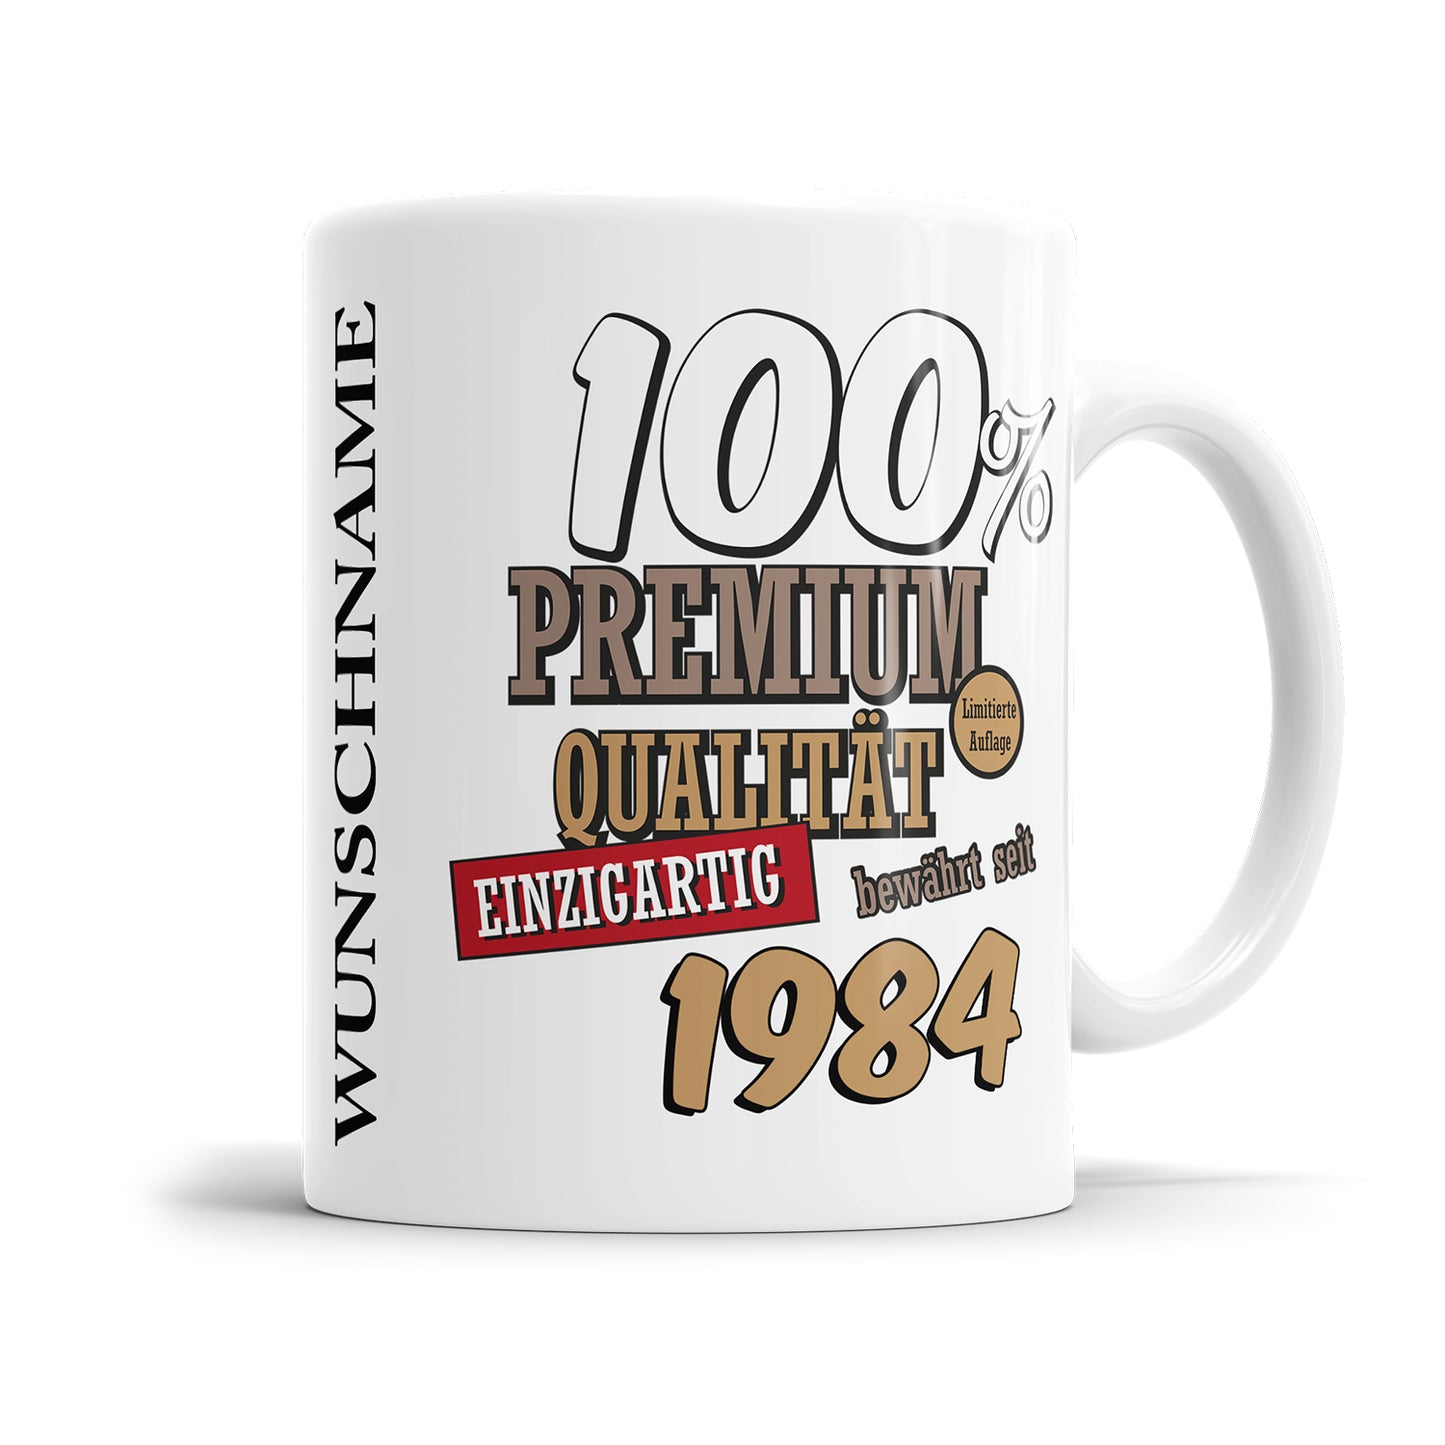 100 Prozent Premium Qualität Einzigartig bewährt seit 1984 Geburtstag Geschenk Tasse Fulima